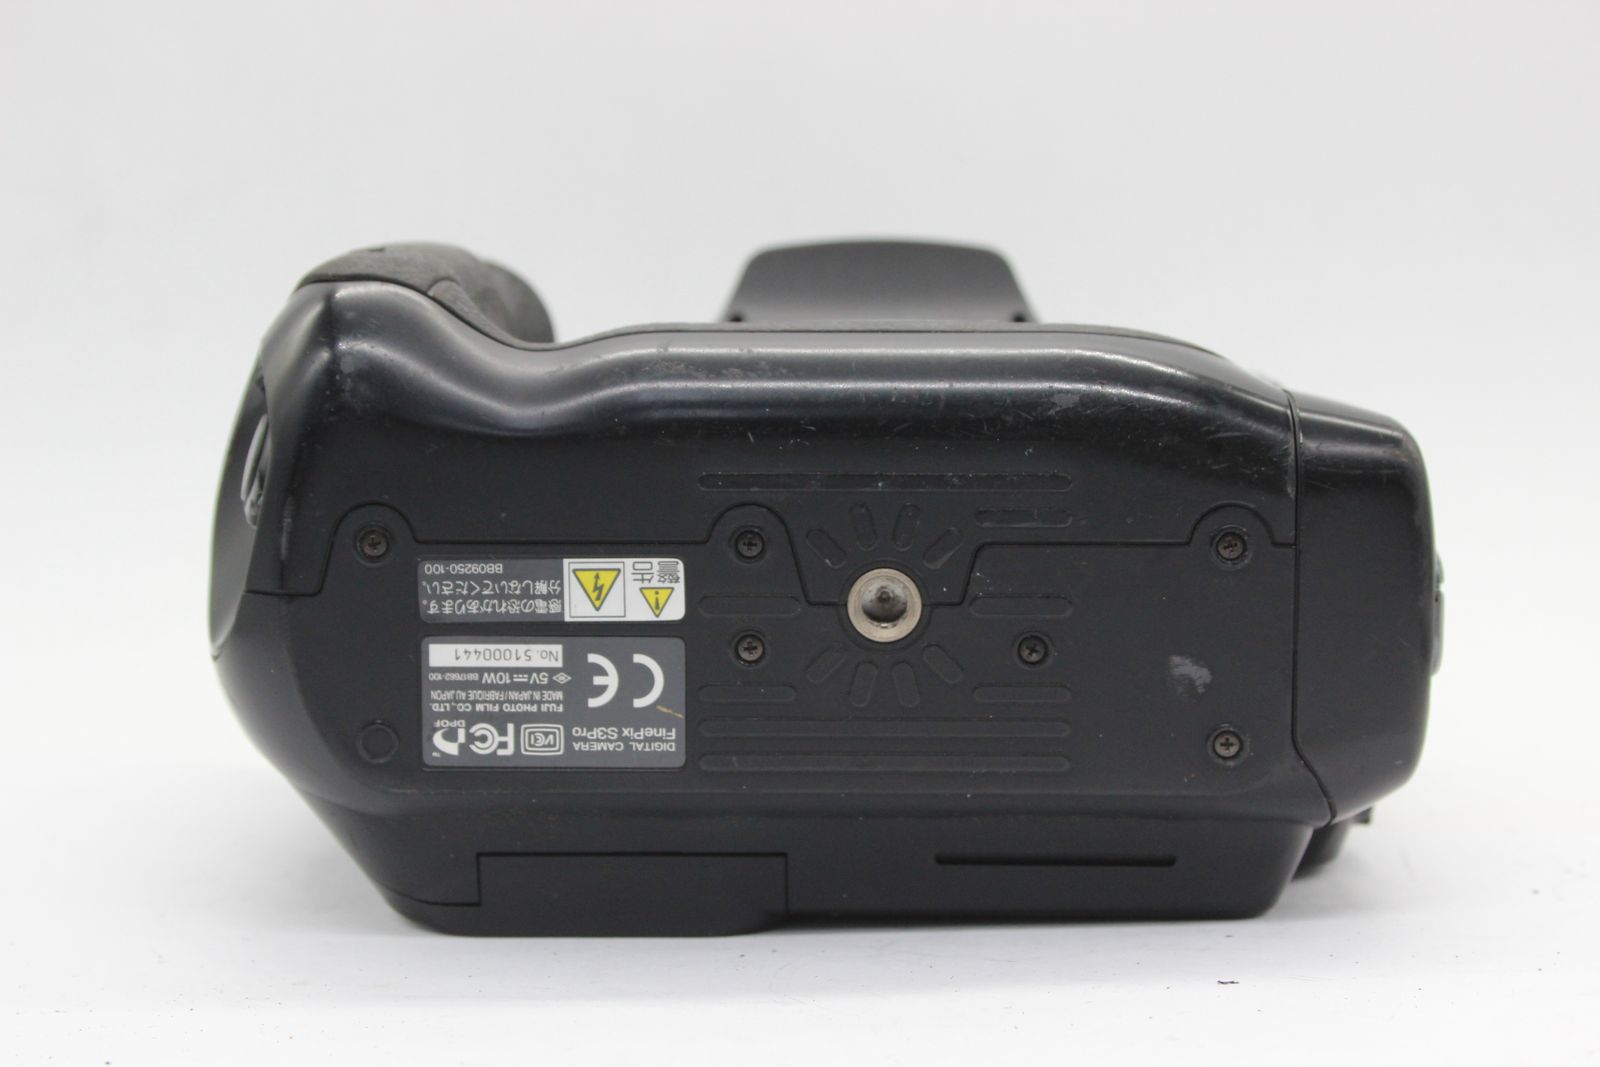 返品保証】 フジフィルム Fujifilm Finepix S3 Pro ボディ s3102 